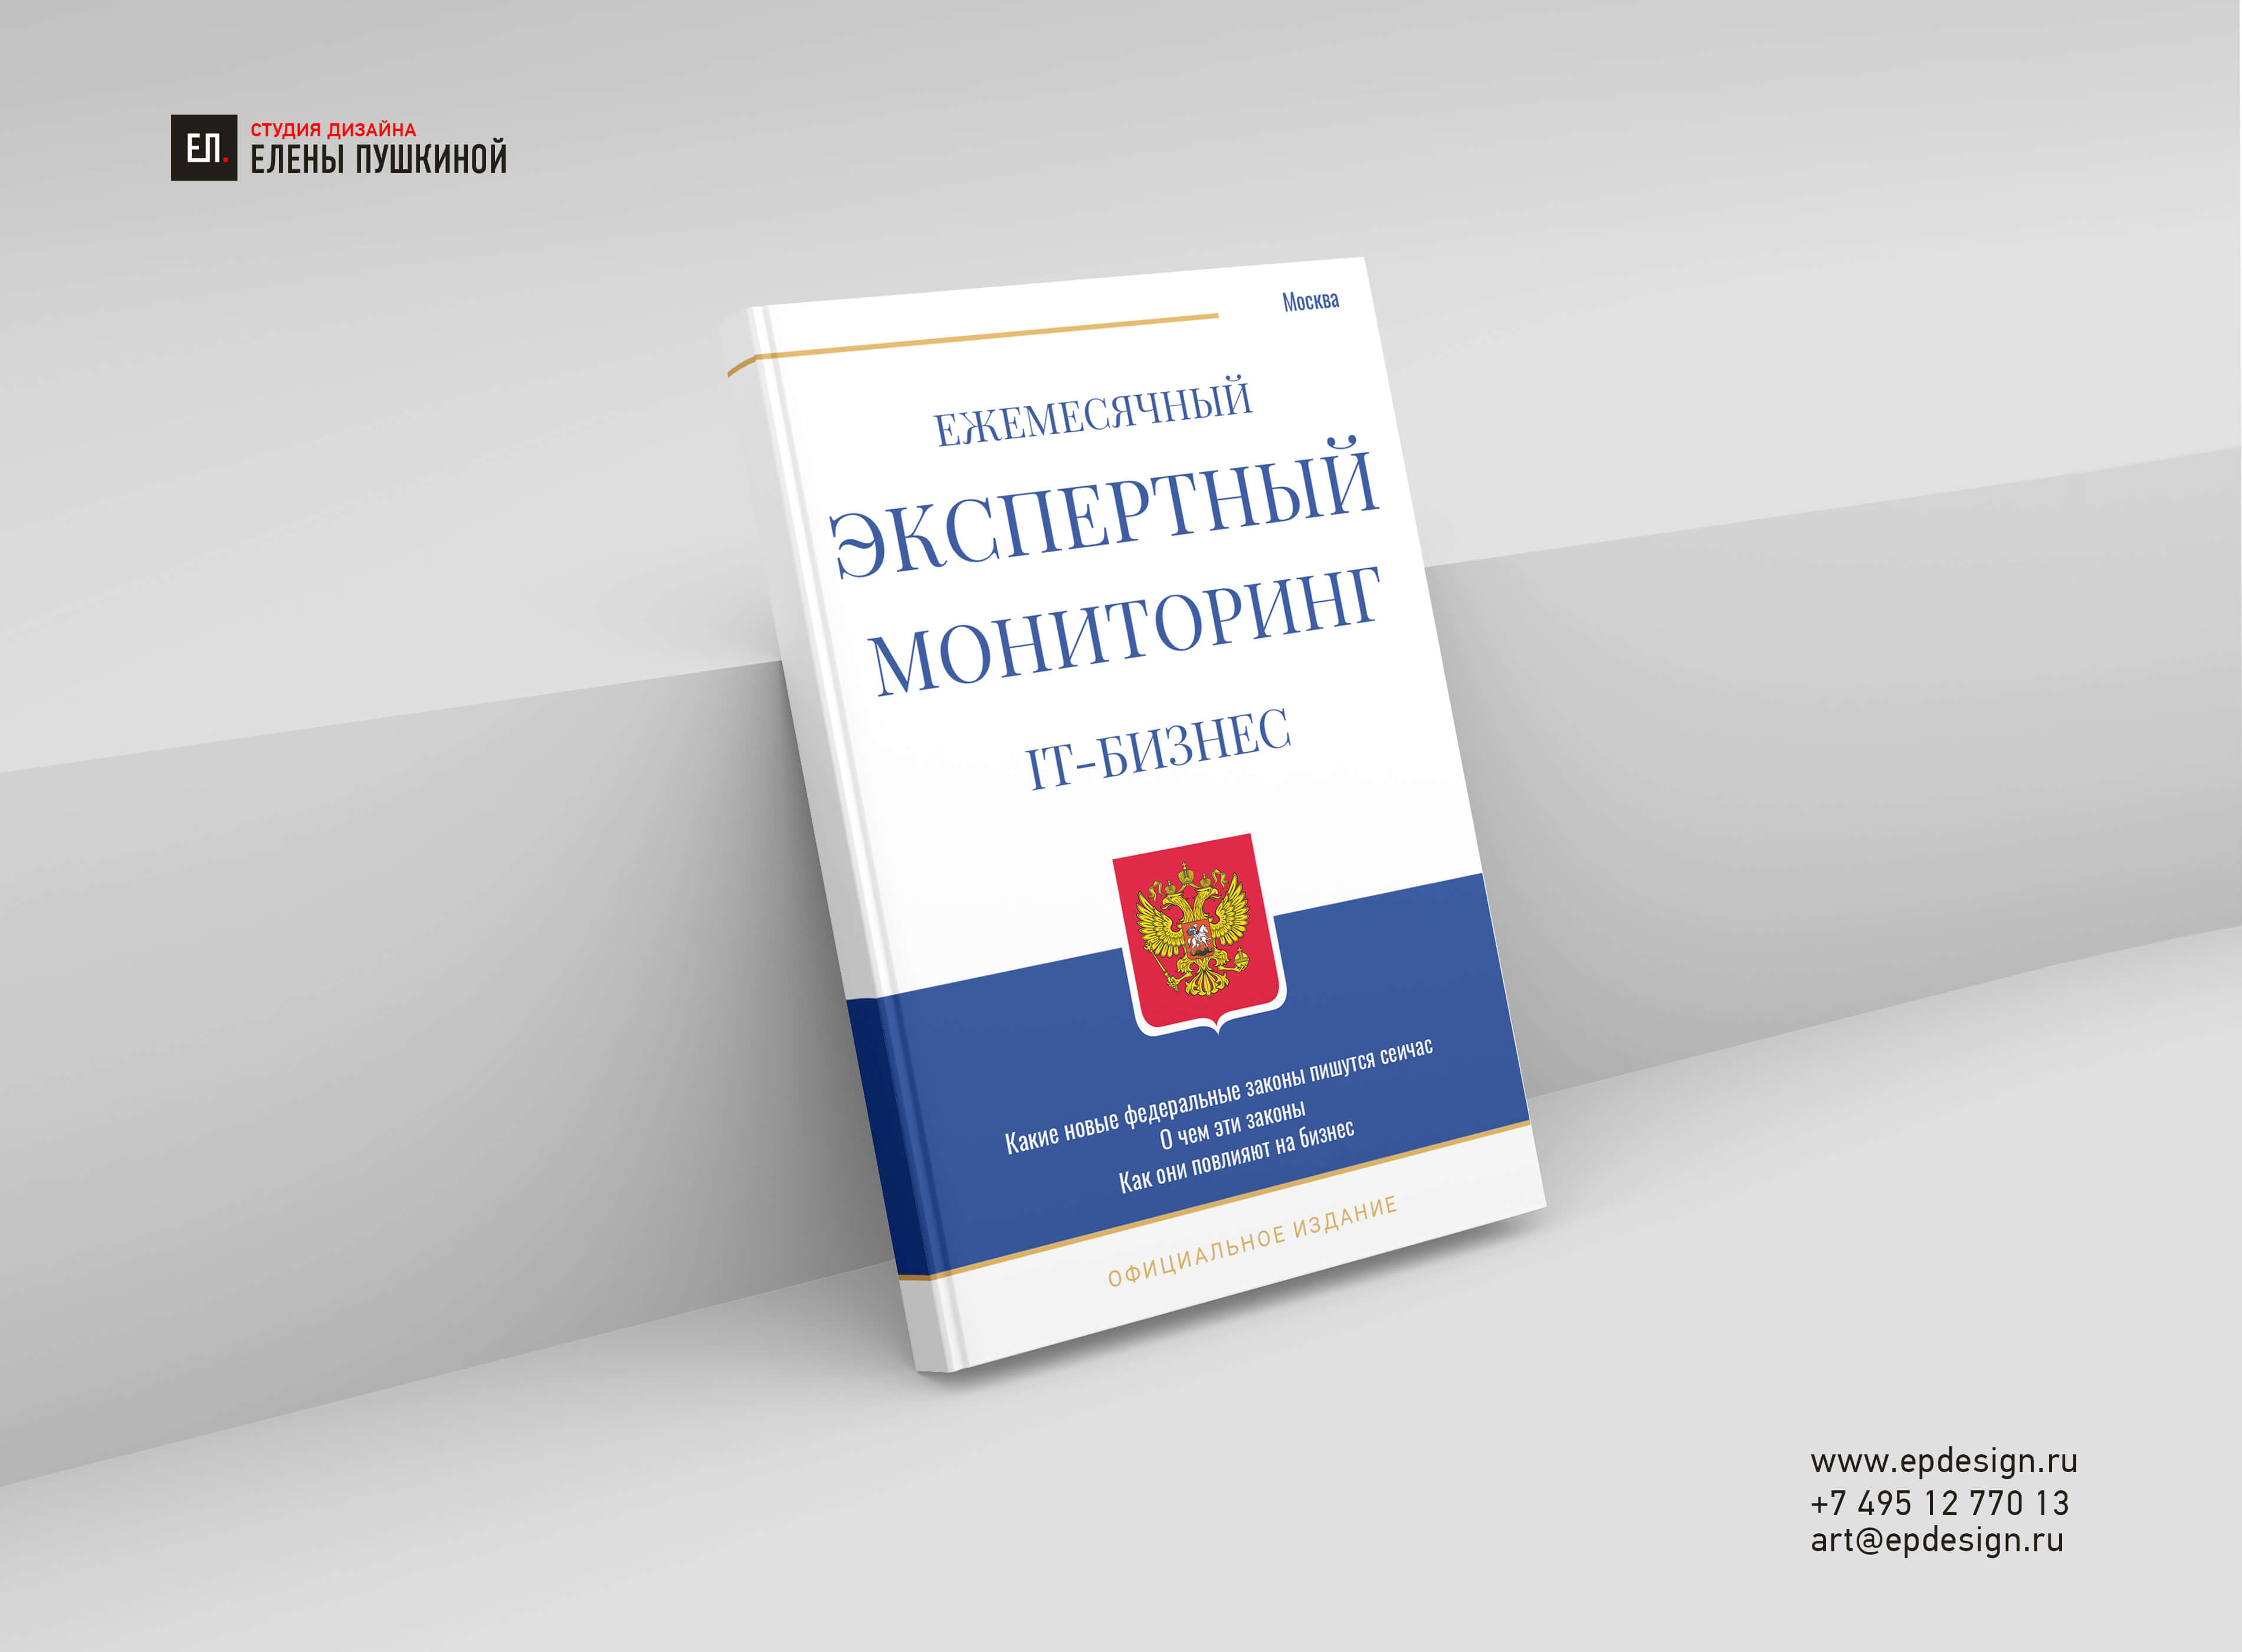 Книга «Экспертный мониторинг IT-бизнеса», Леонид Агронов Создание книг Портфолио